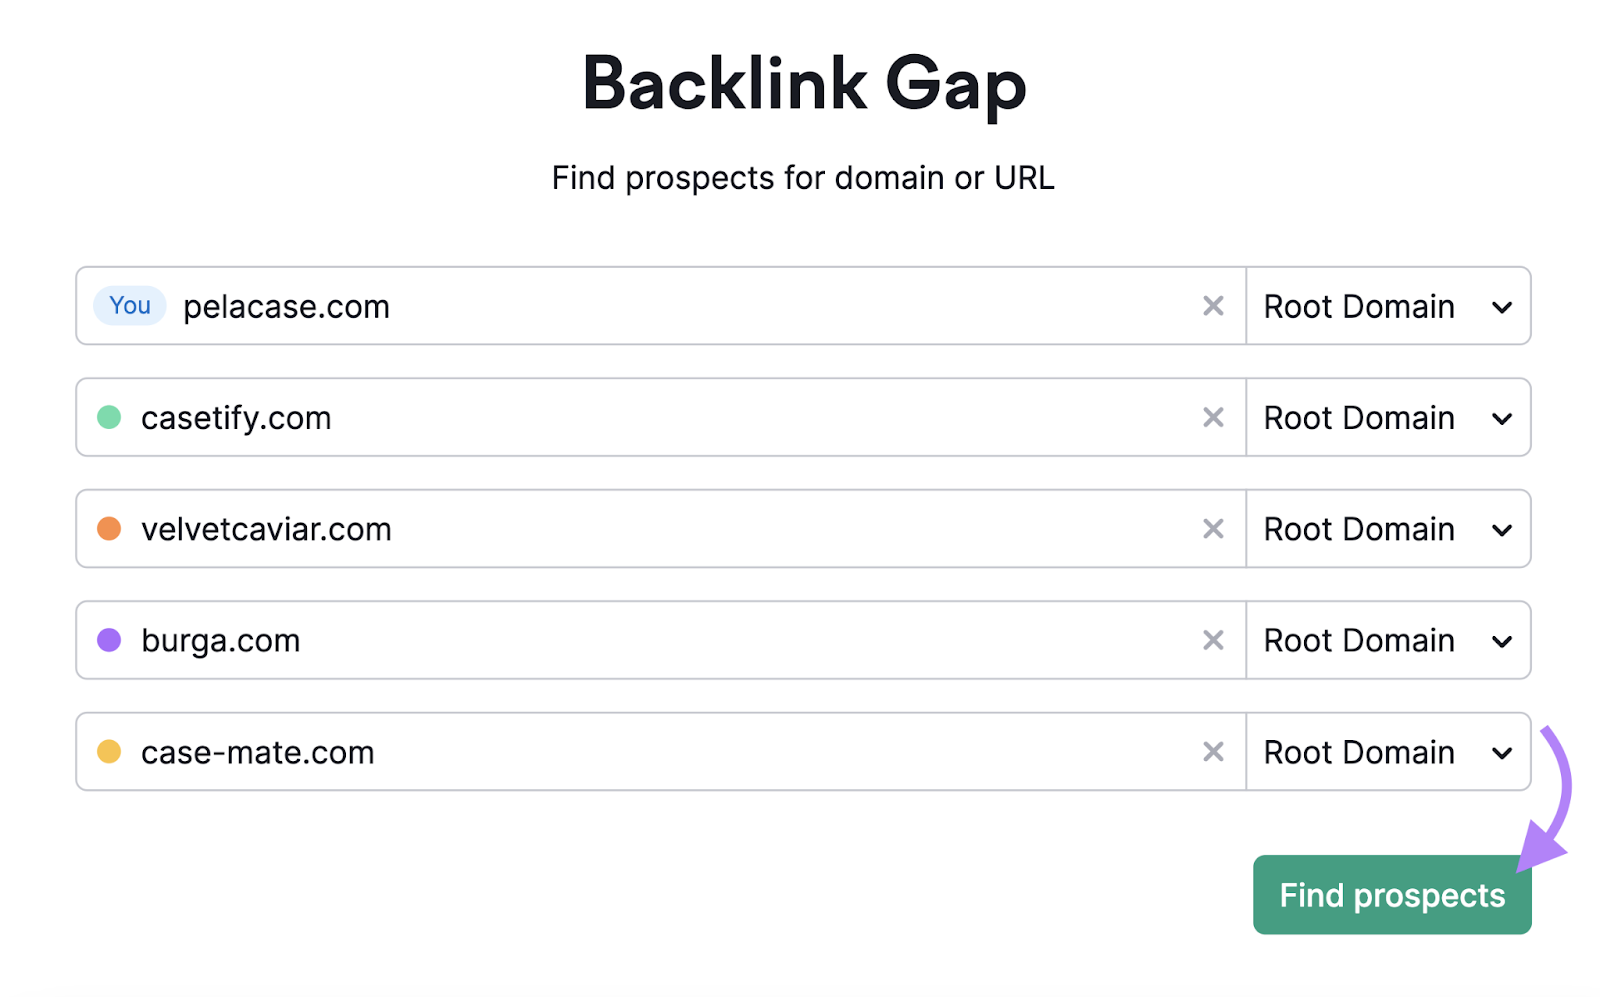 Backlink Gap tool search